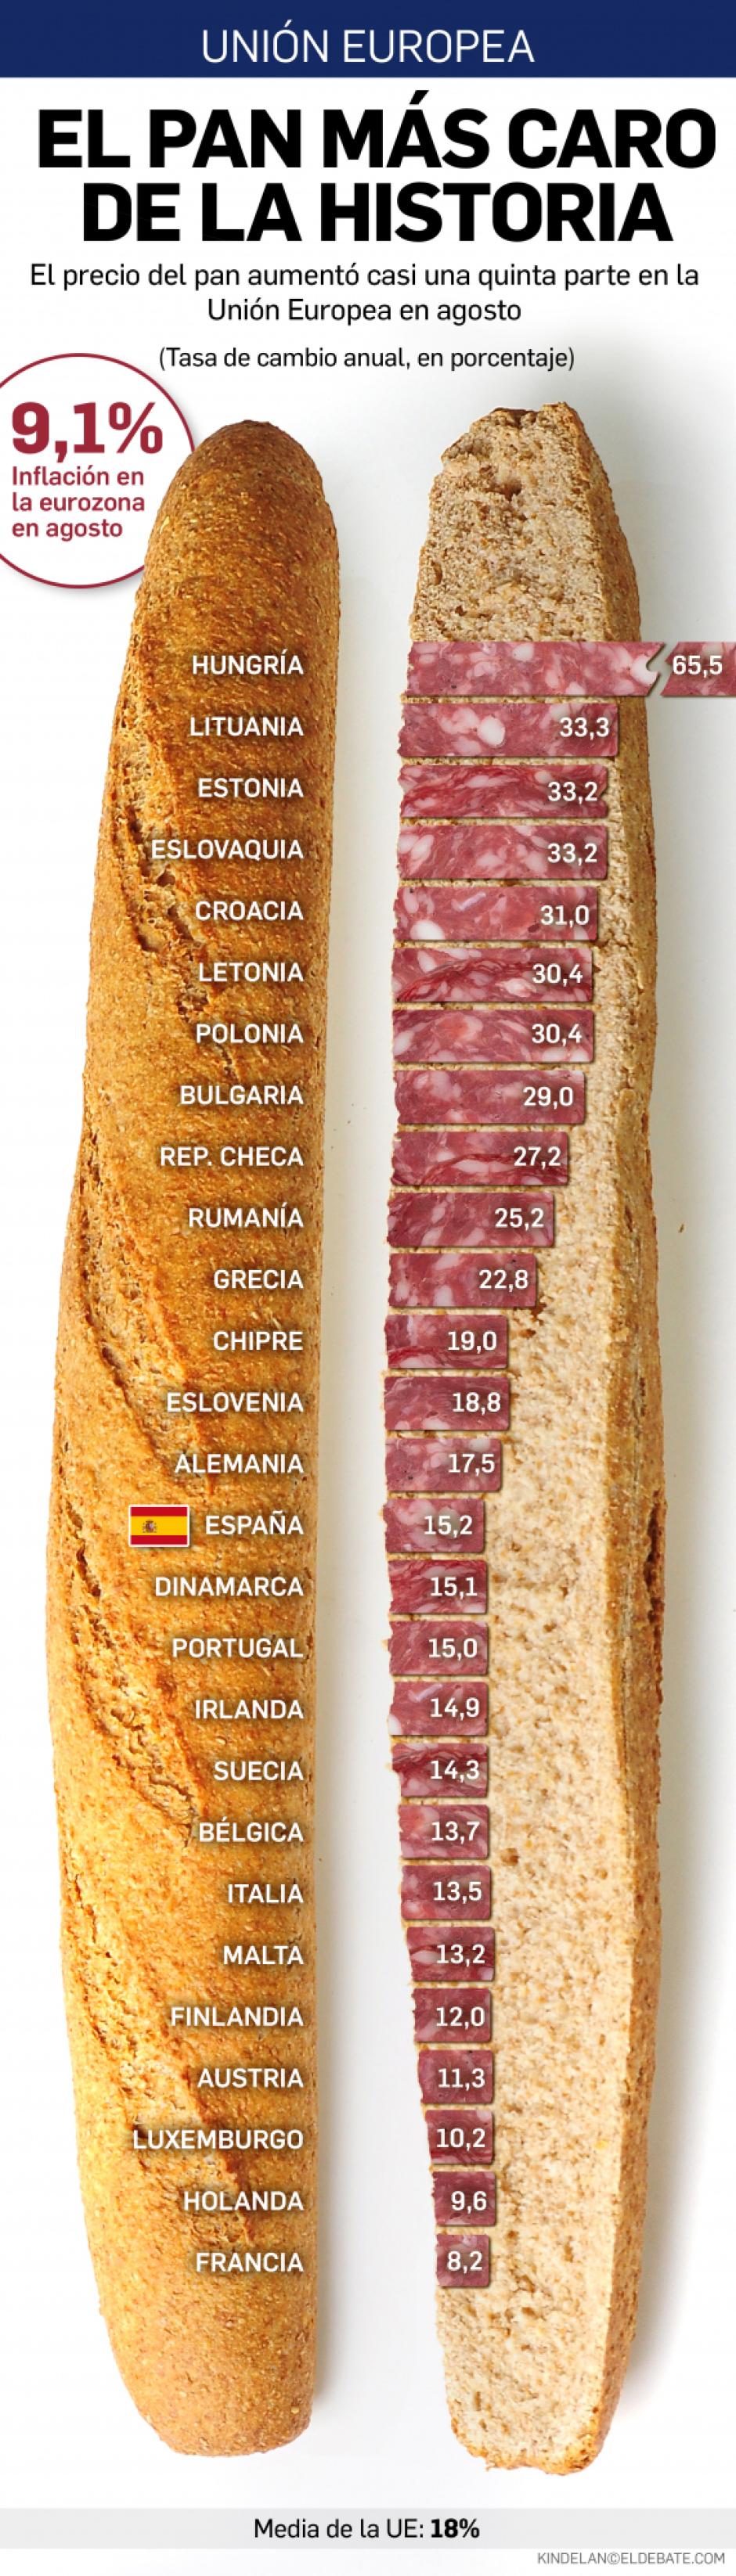 Incremento del coste del pan por países de la Unión Europea